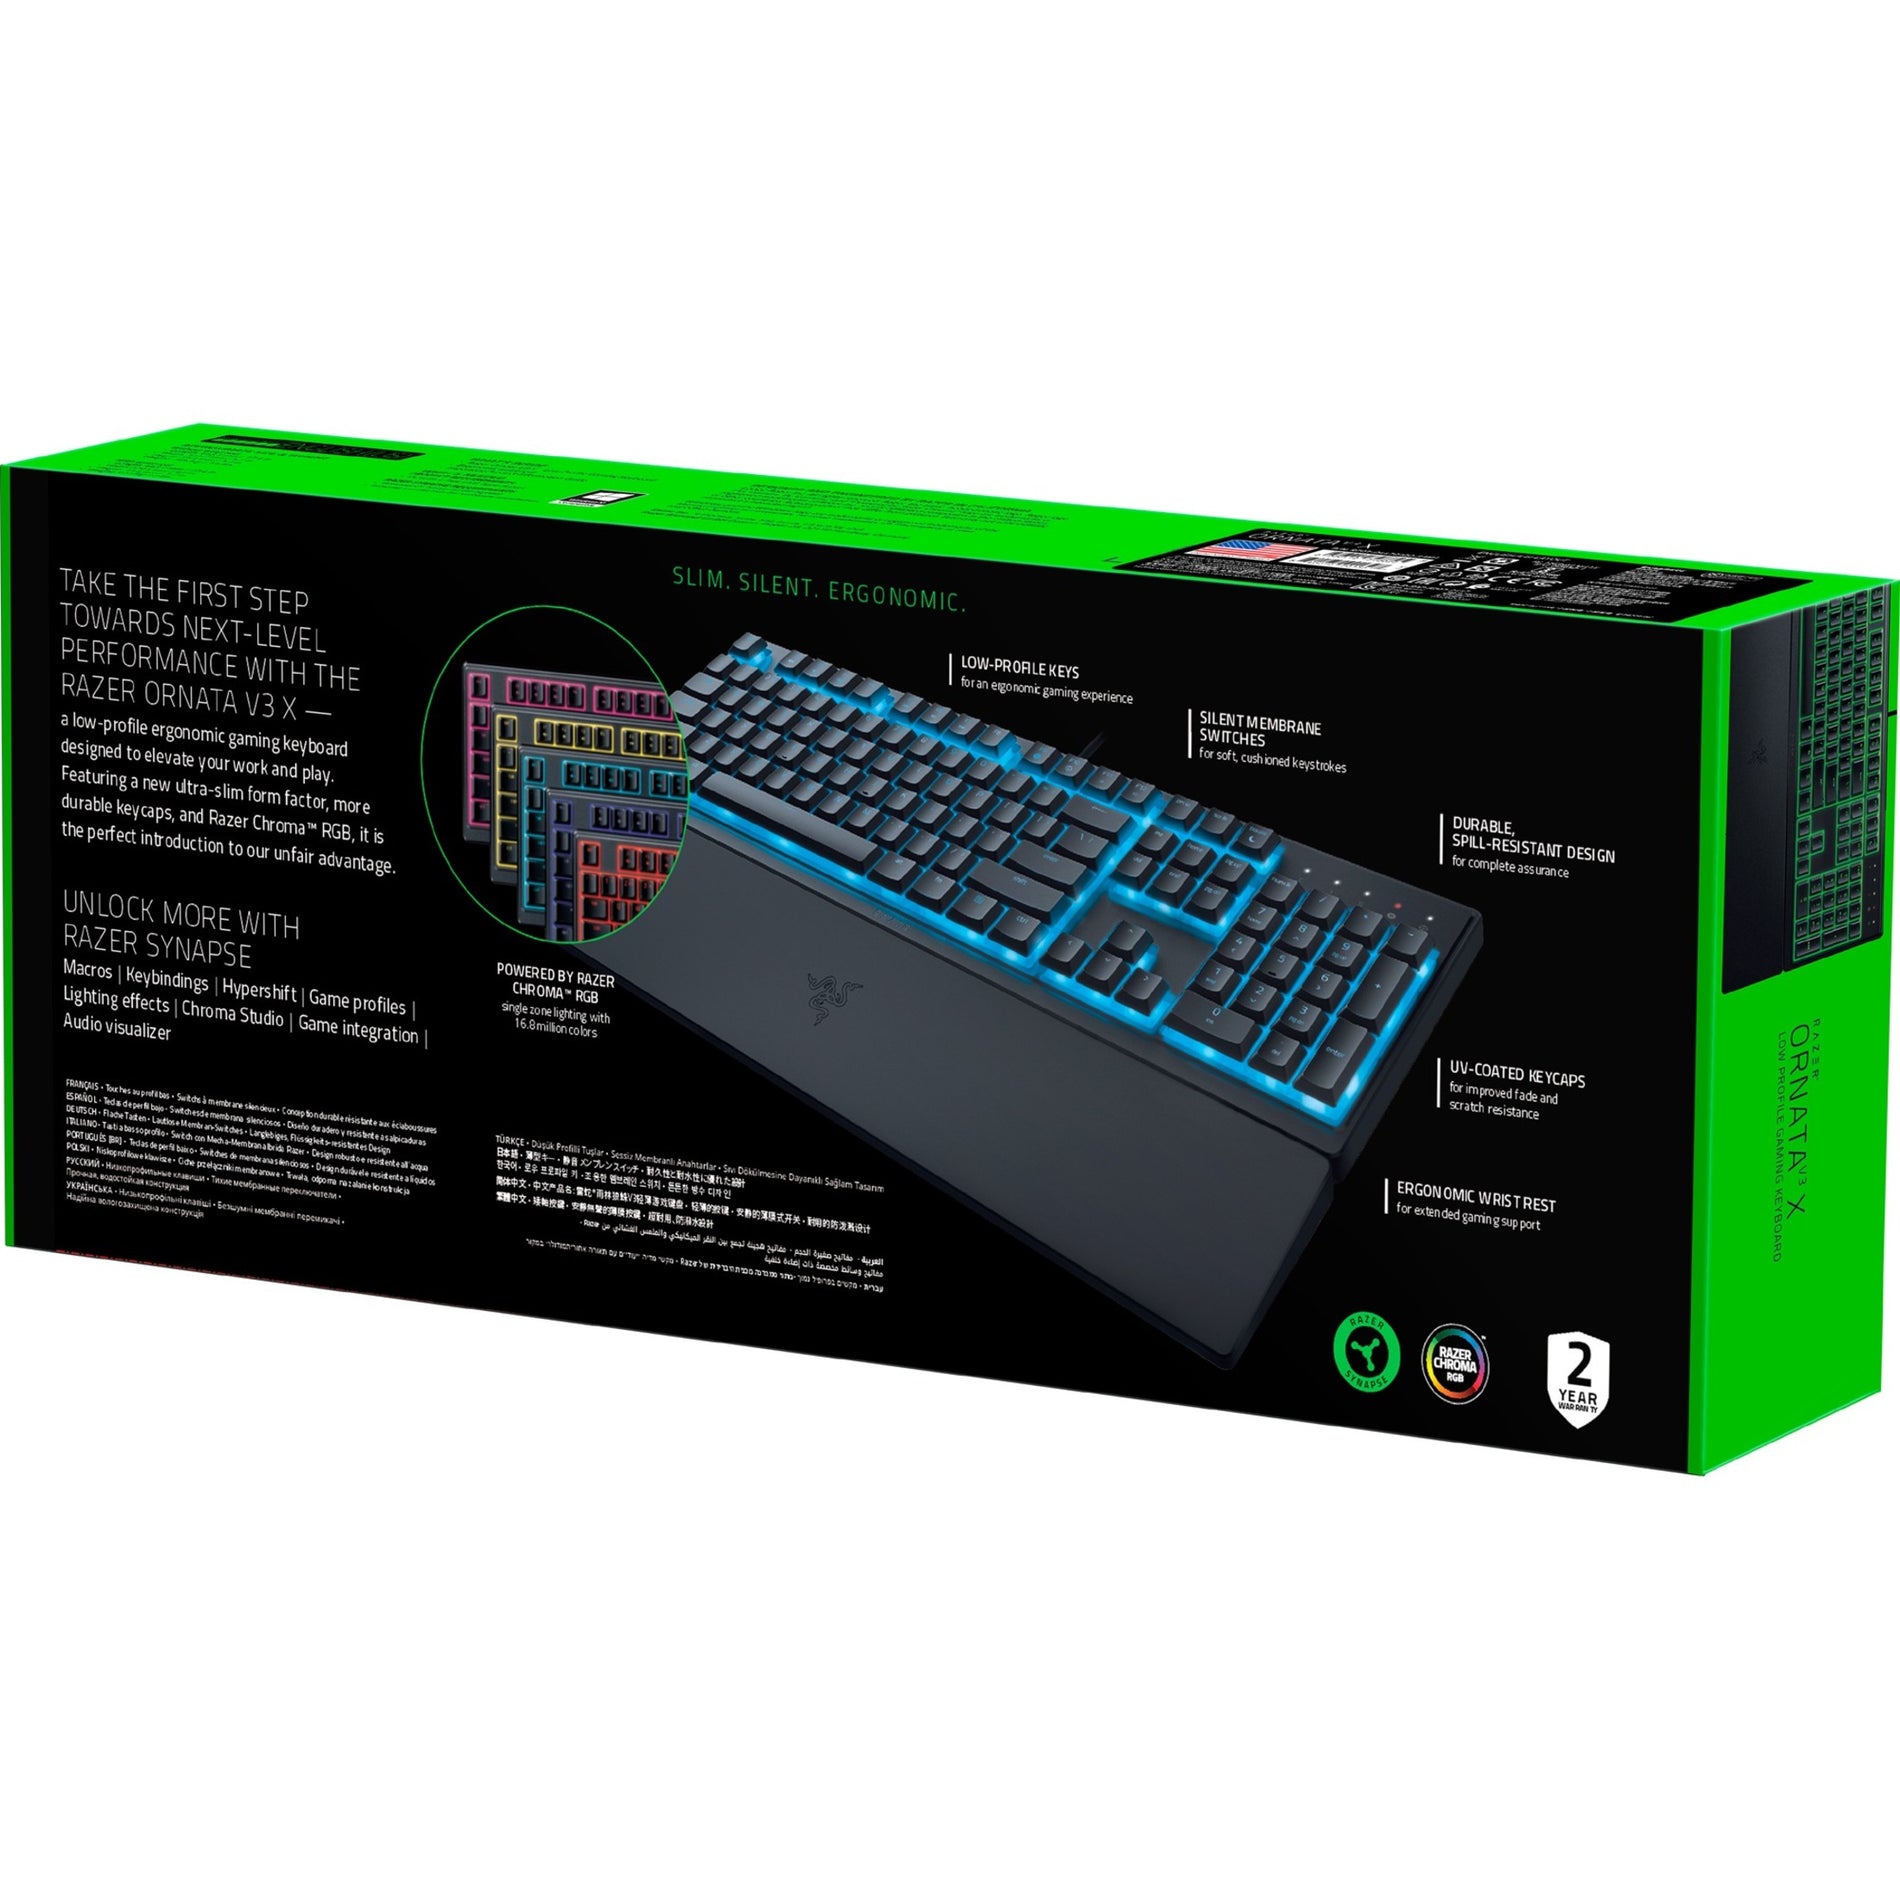 Razer RZ03-04470200-R3U1 Ornata V3 X Low-profile Gaming Keyboard, RGB Backlight, 2 Year Warranty